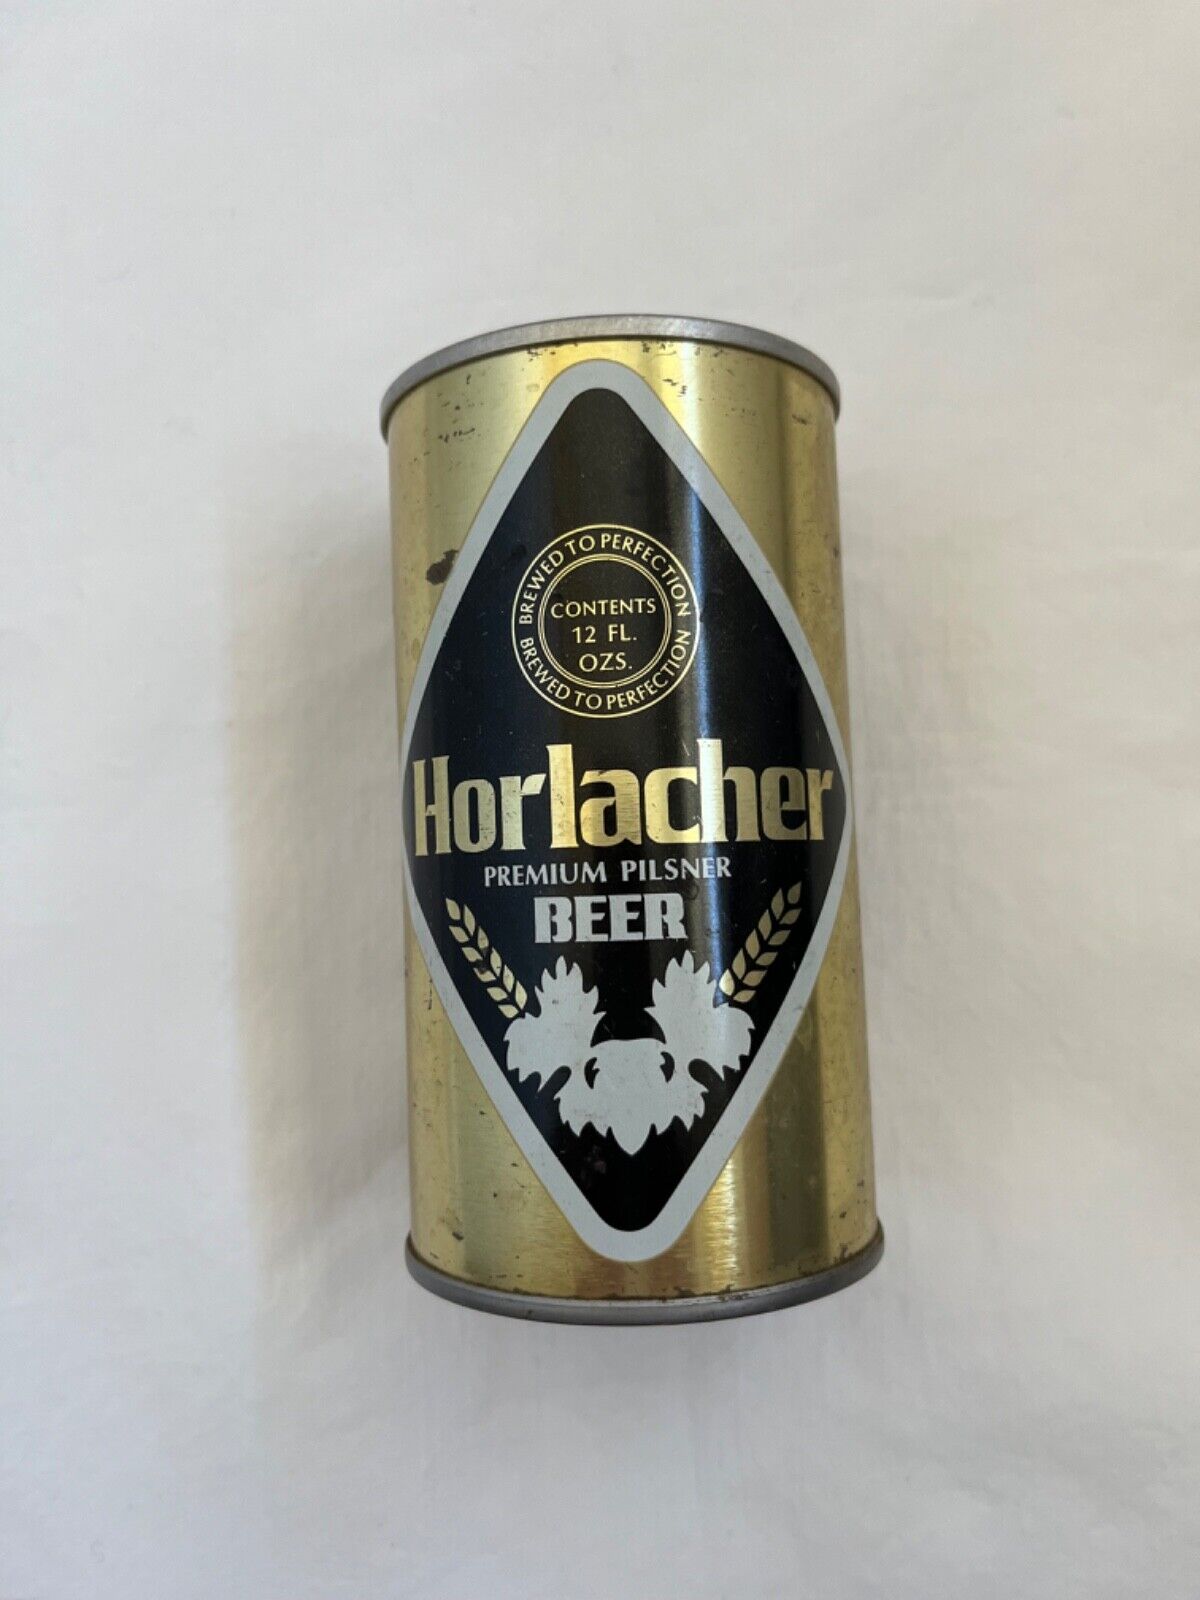 Horlacher Premium Pilsner Beer - Steel Can - Pull Tab - Opened on Bottom